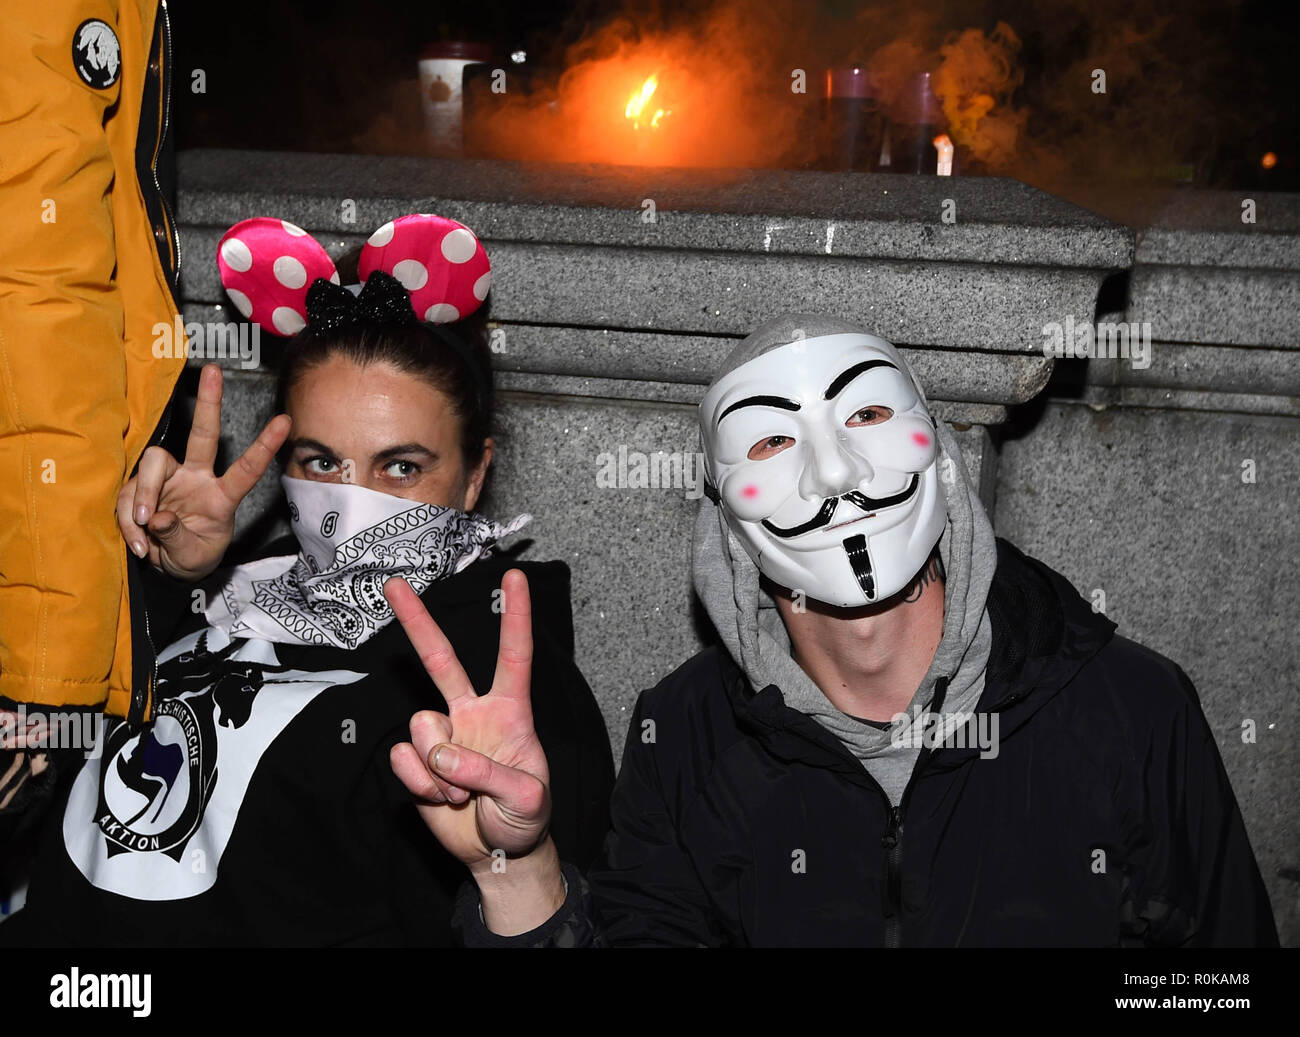 Les manifestants masqués à Trafalgar Square, Londres, prendre part à la millions de Mars Bonfire Night Masque de protestation organisée par groupe d'activistes anonymes. Banque D'Images